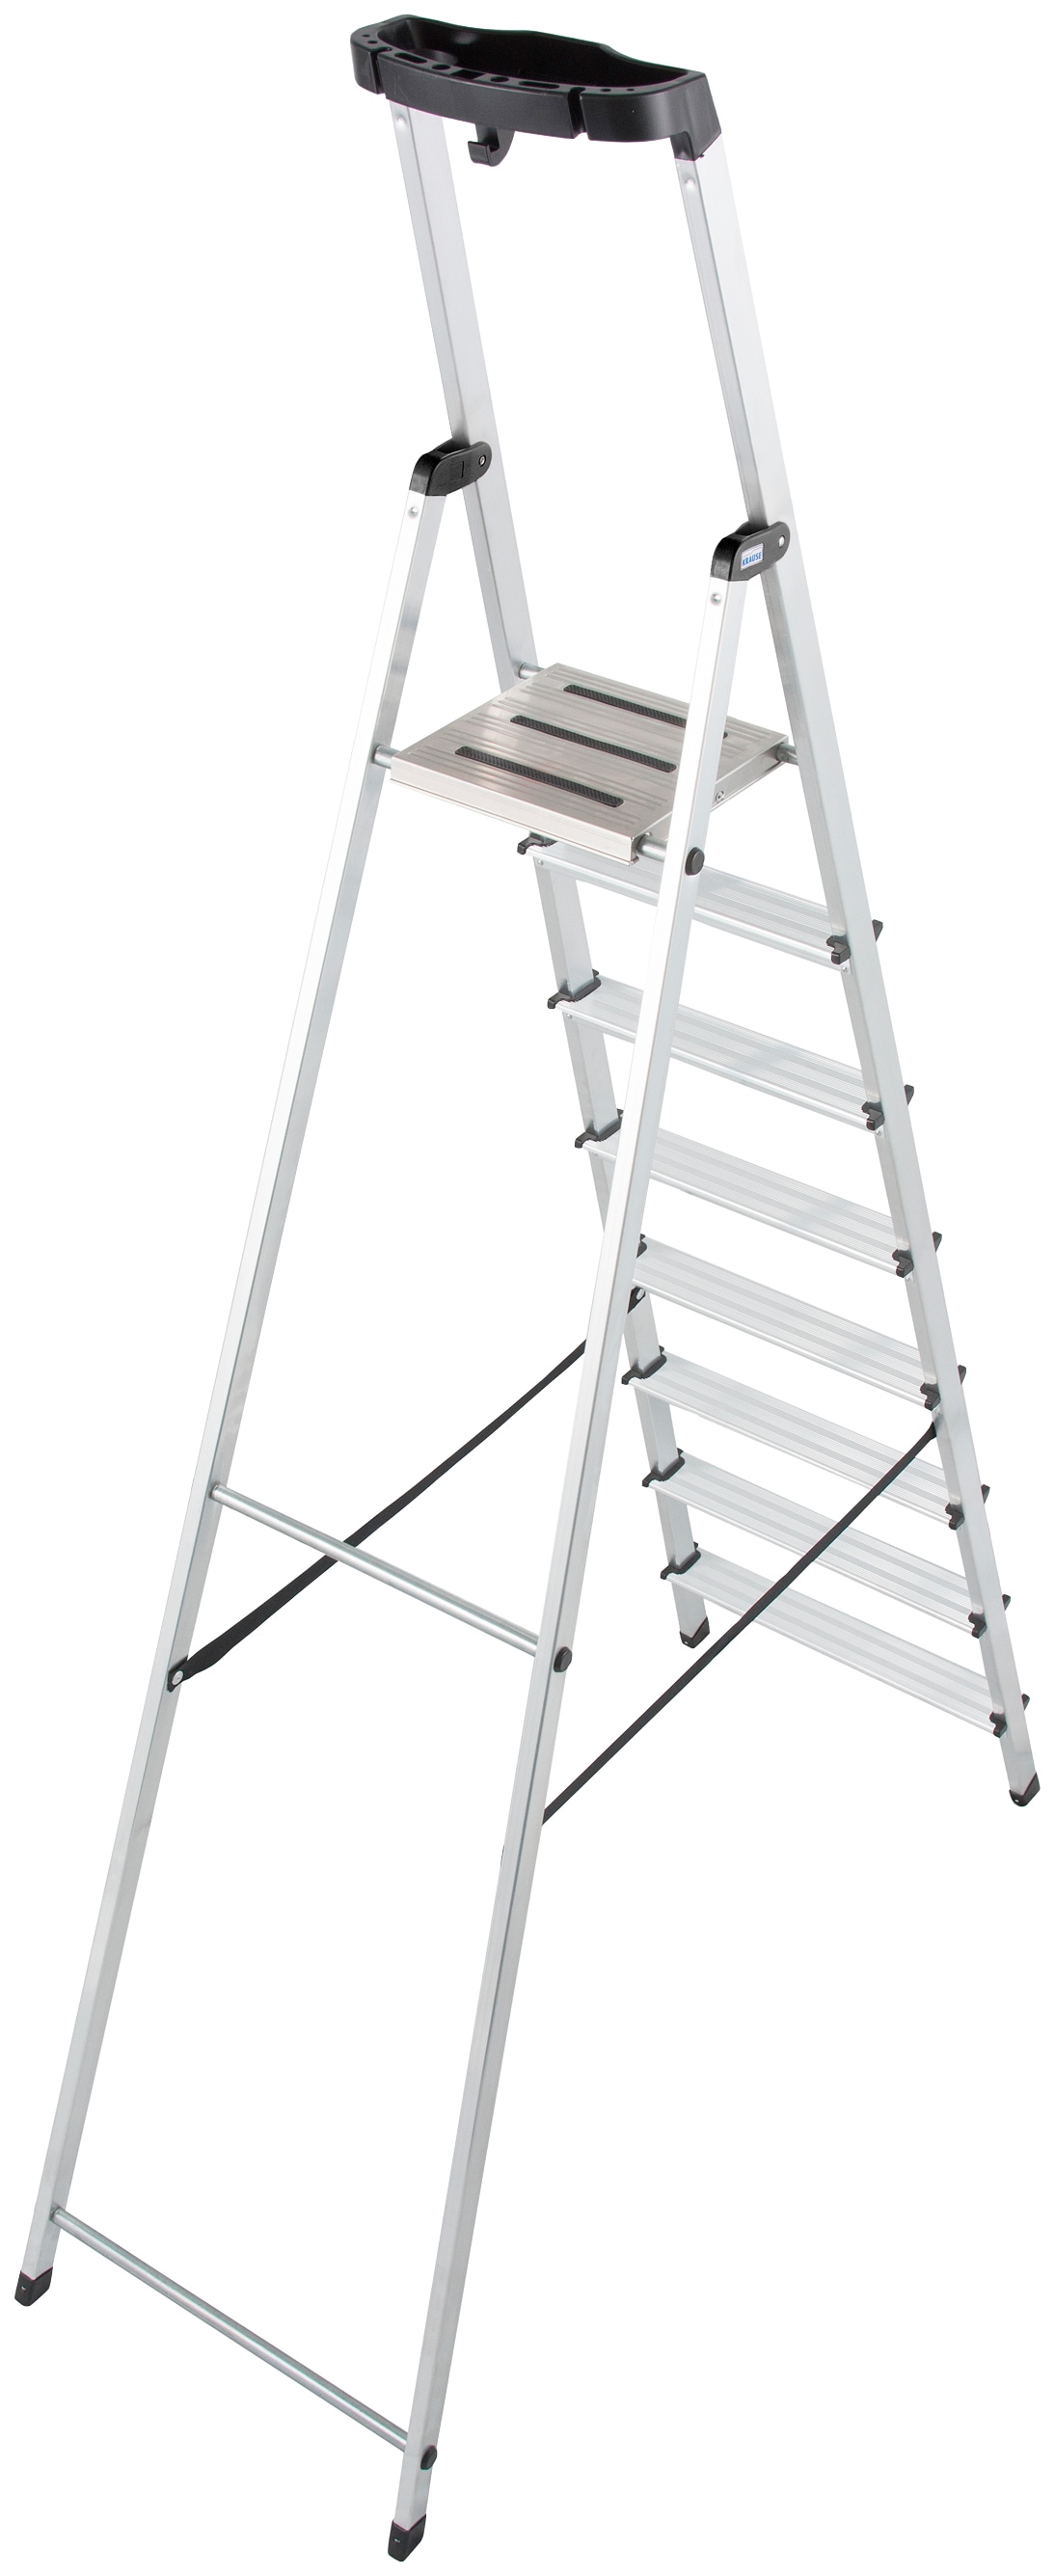 KRAUSE Stehleiter "Safety", Aluminium, 1x8 Stufen, Arbeitshöhe ca. 370 cm